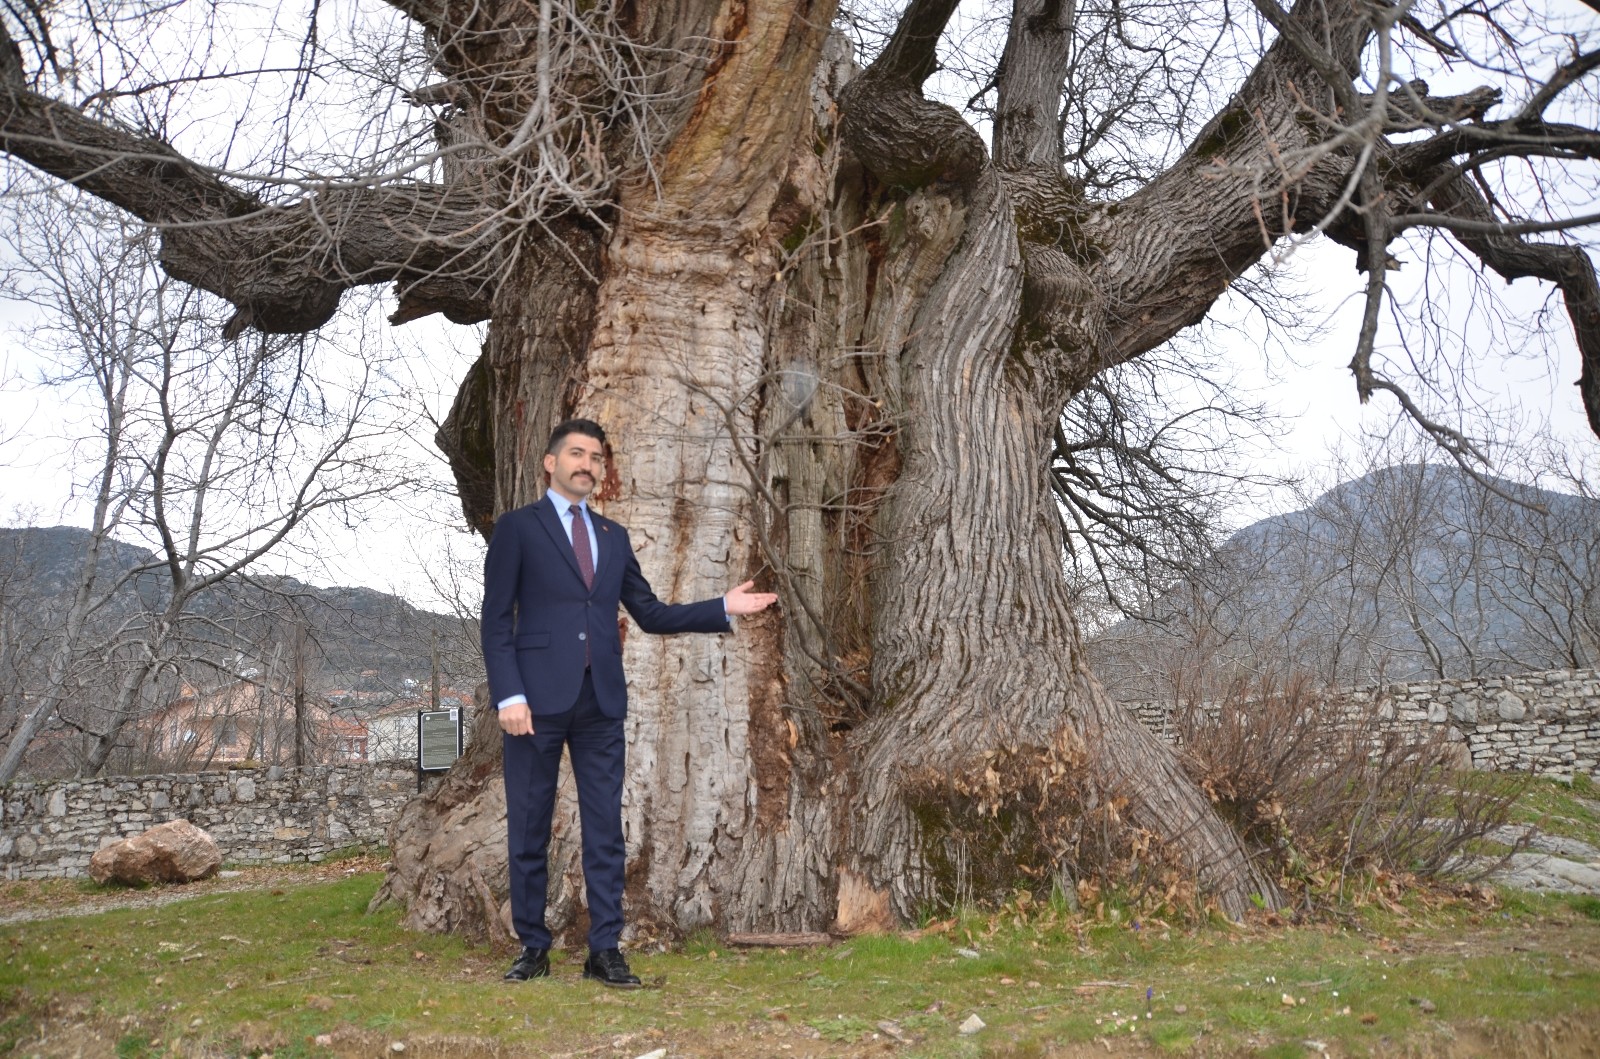 Bin 100 yıllık tescilli kestane ağacı tarihe tanıklık ediyor